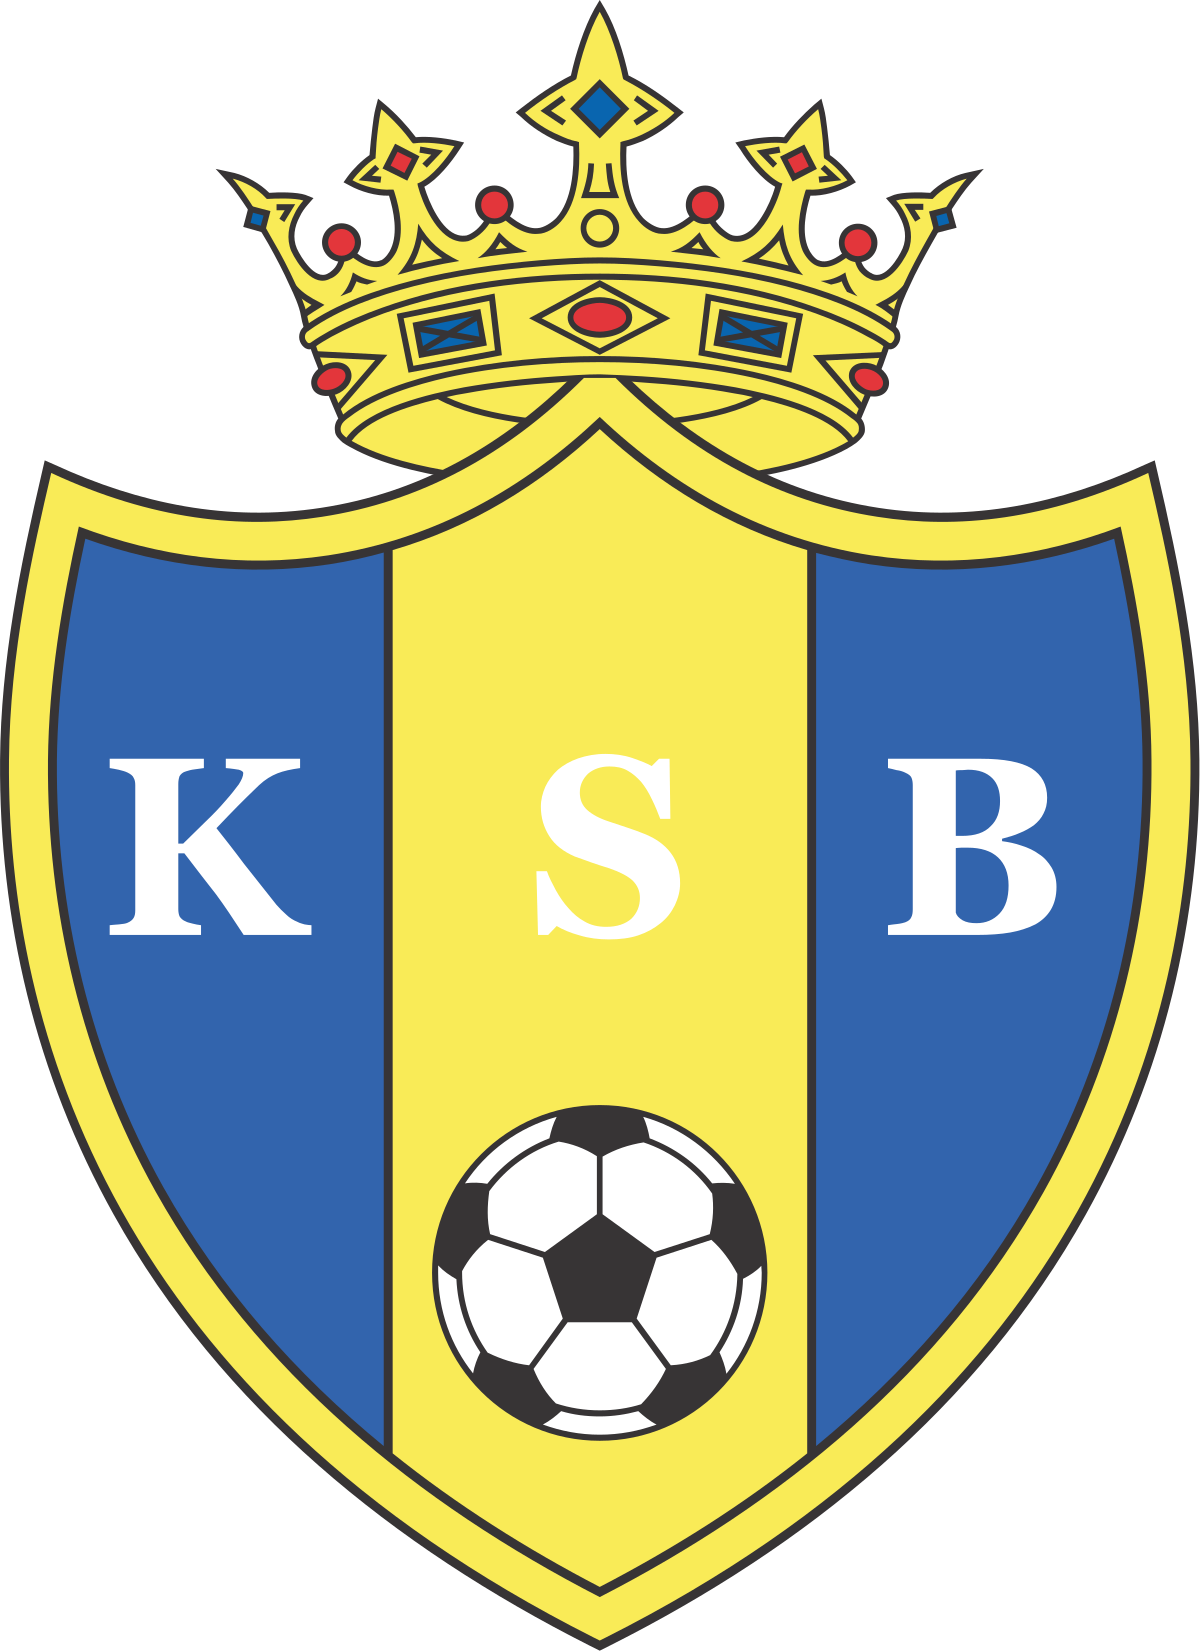 Burreli logo